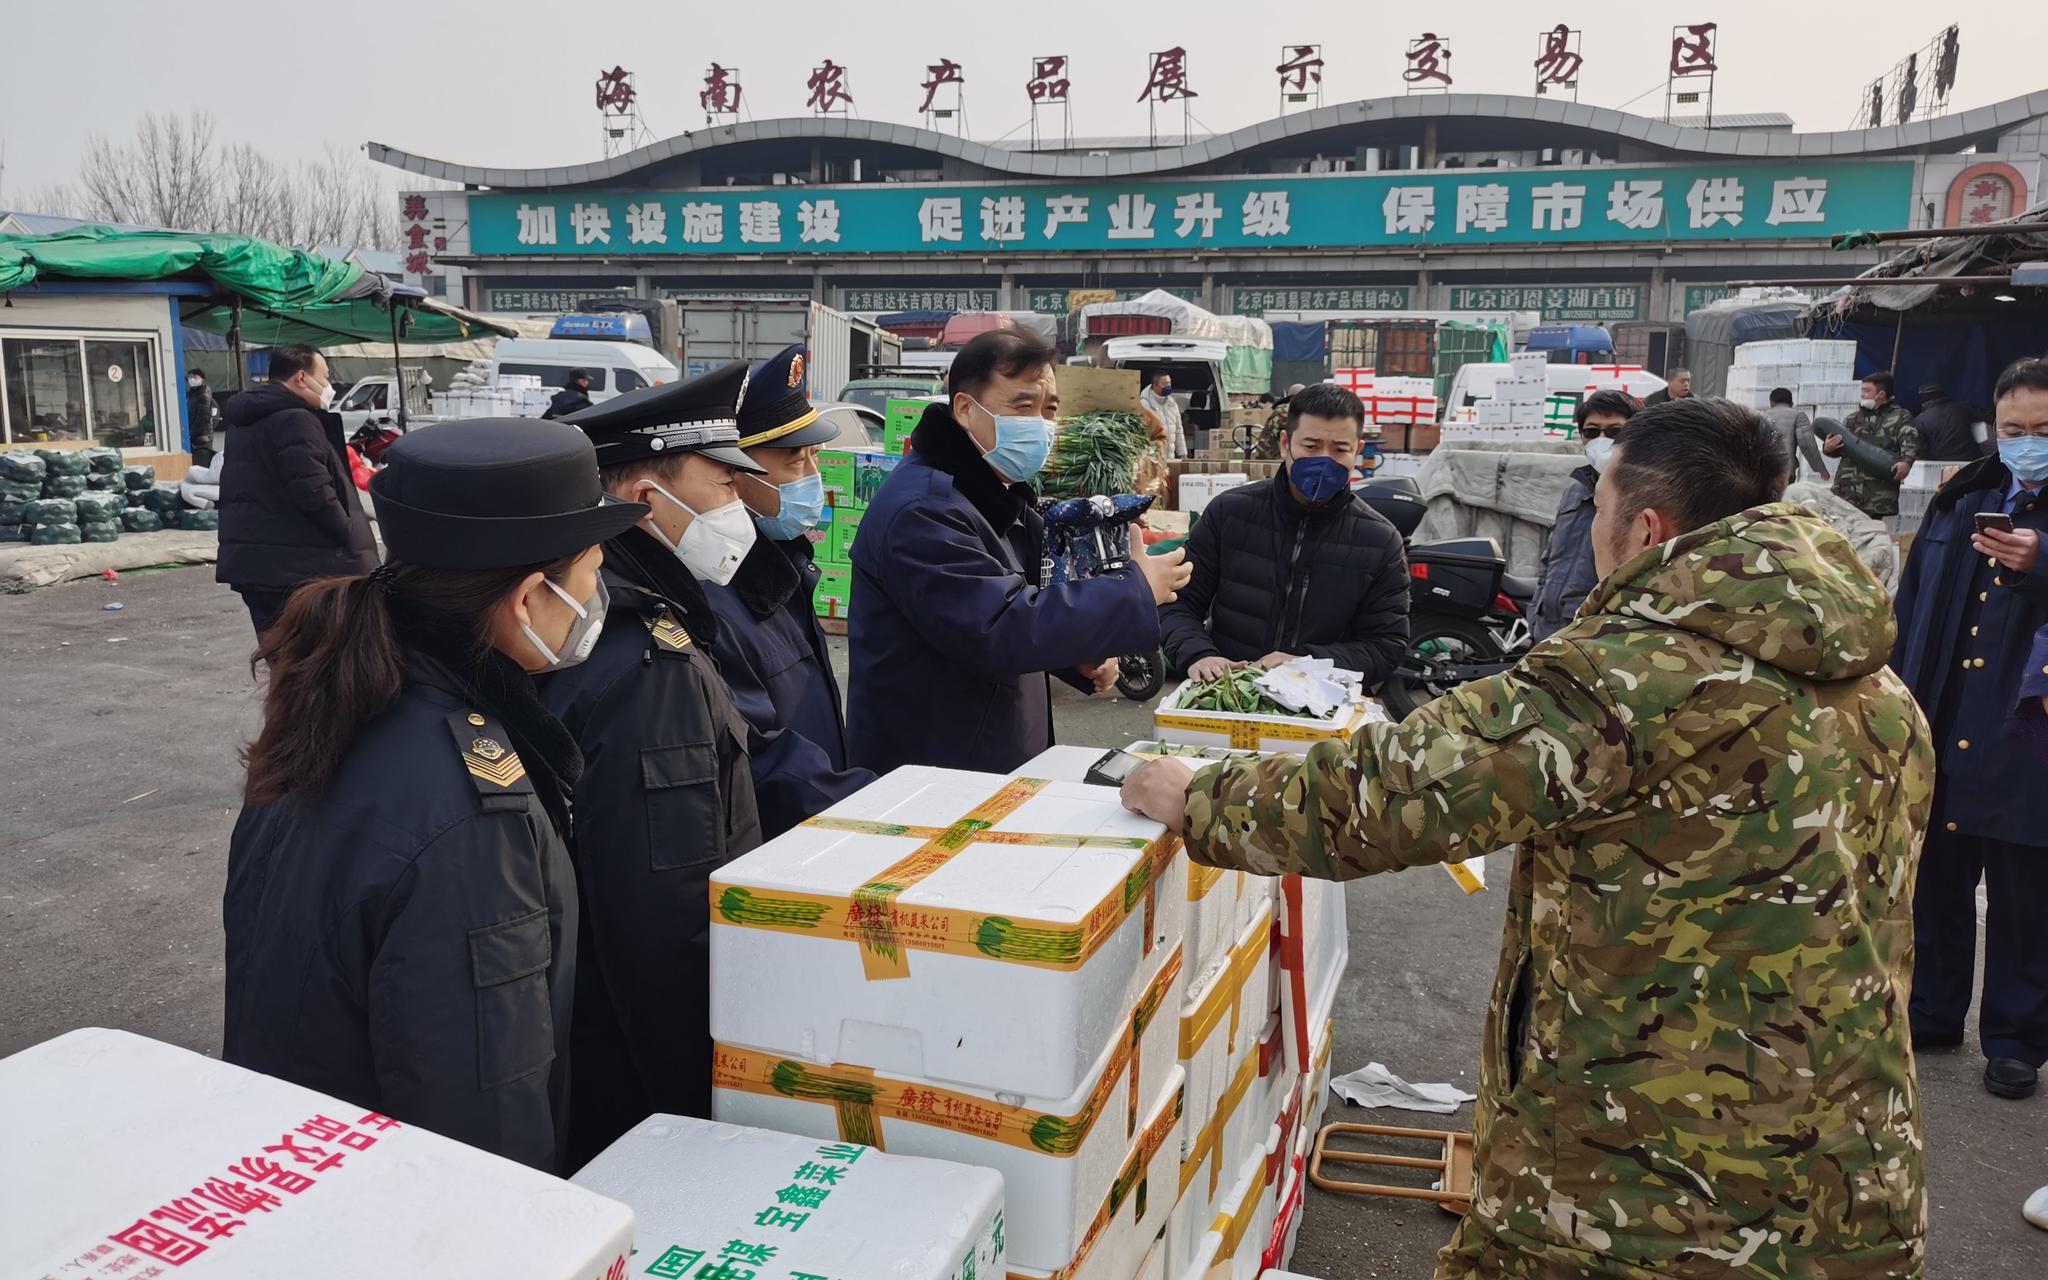 新发地市场工作人员询问菜价。新京报记者 王颖 摄